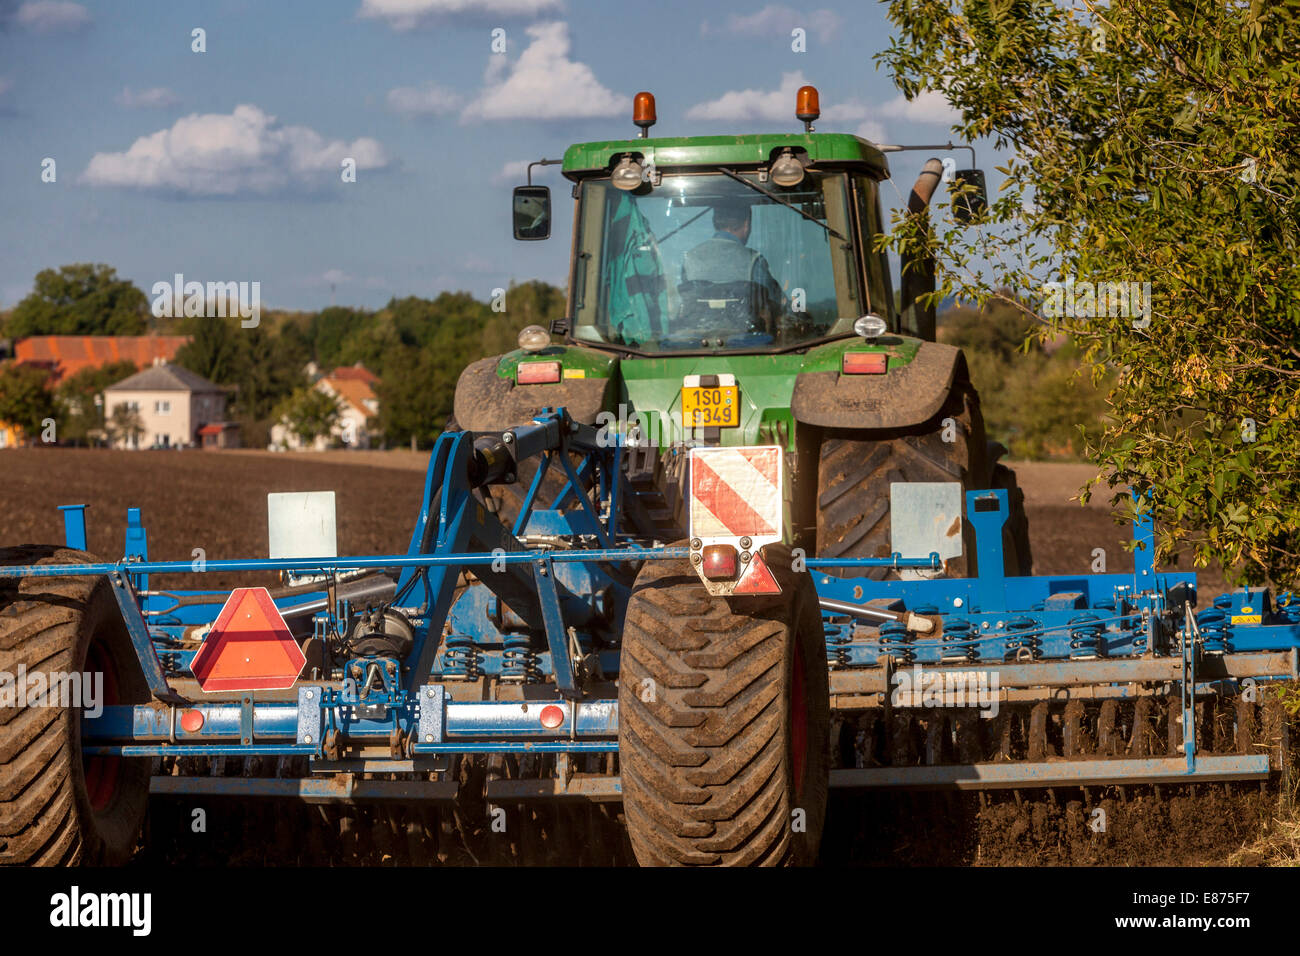 Herbst Agrotechnische Arbeiten, Traktorpflüger, Tschechische Republik Bauer Stockfoto